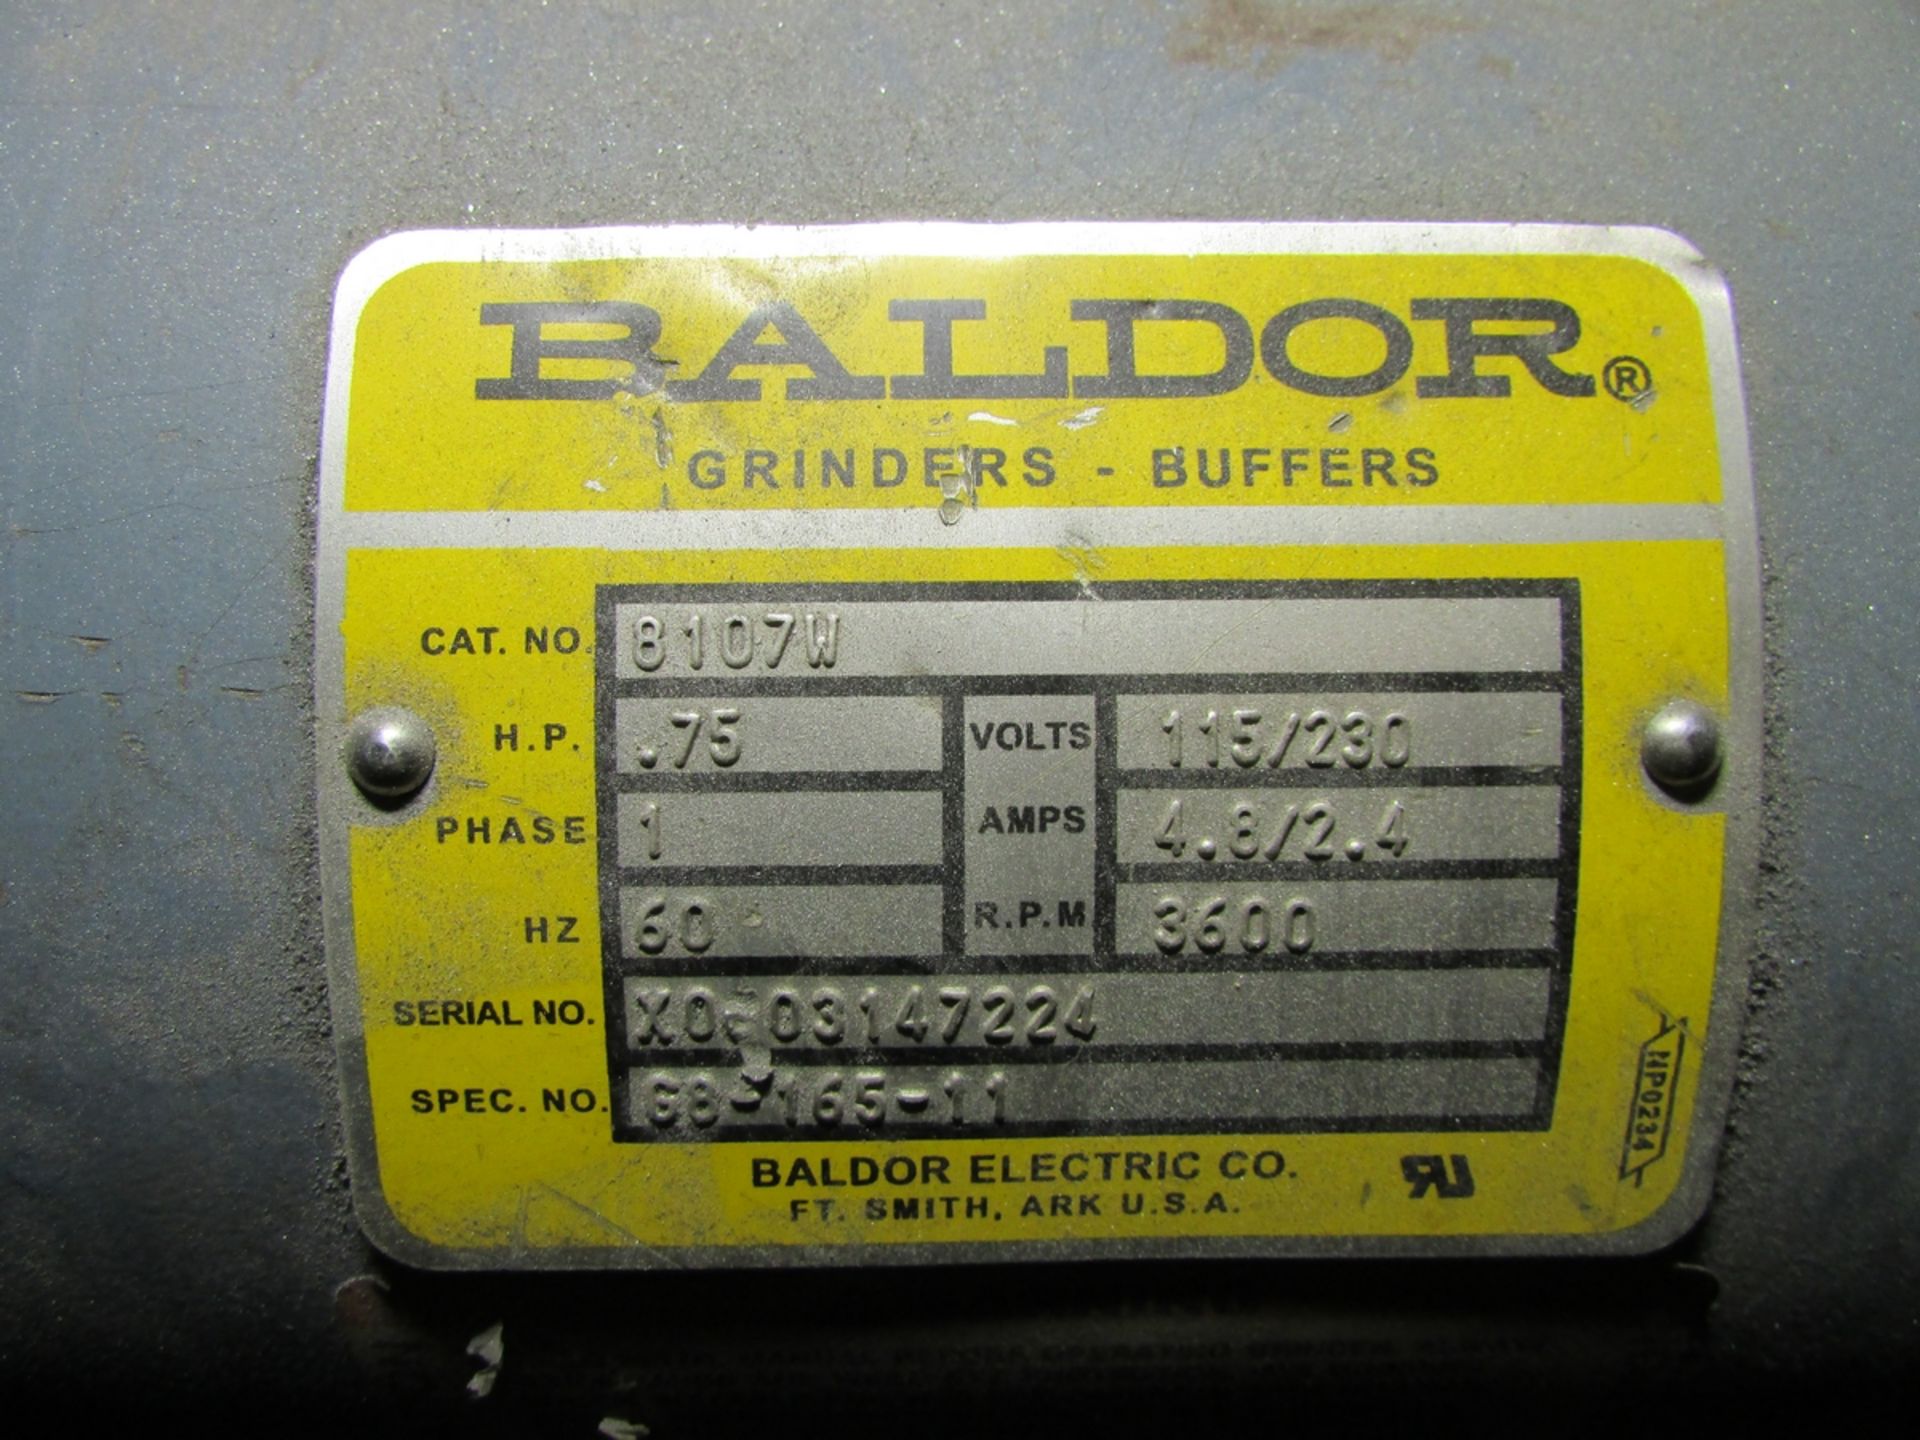 BALDOR 8" DOUBLE END PEDESTAL GRINDER, CAT. NO. 8107W, 3/4 HP 115/230V, S/N X0003147224 - Image 4 of 4